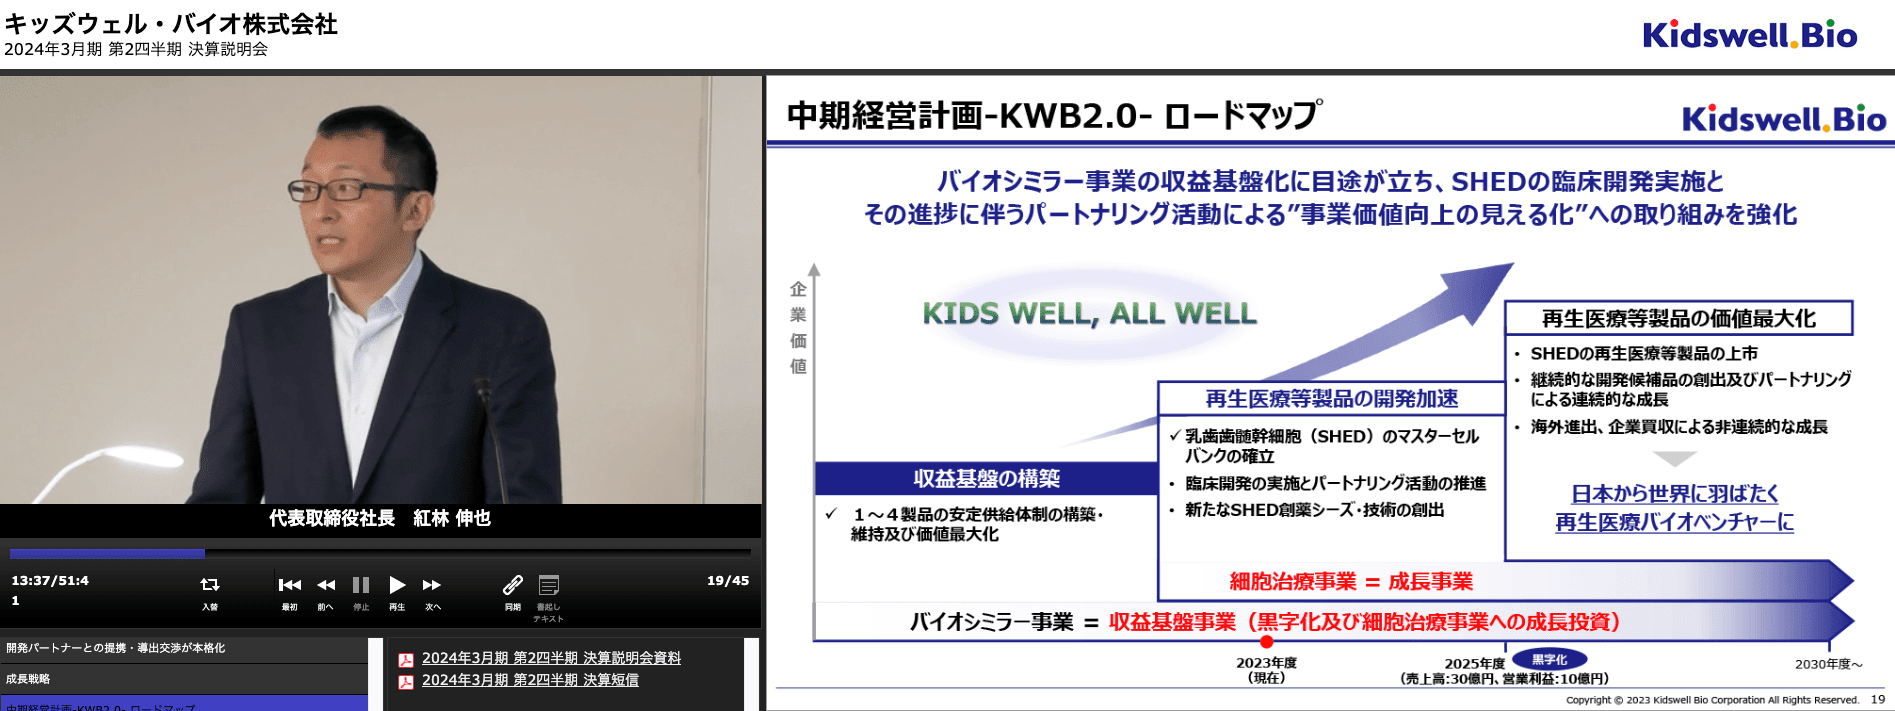 キッズウェル・バイオ株式会社 2024年3月期 第2四半期決算説明会動画 中期経営計画-KWB2.0- ロードマップ